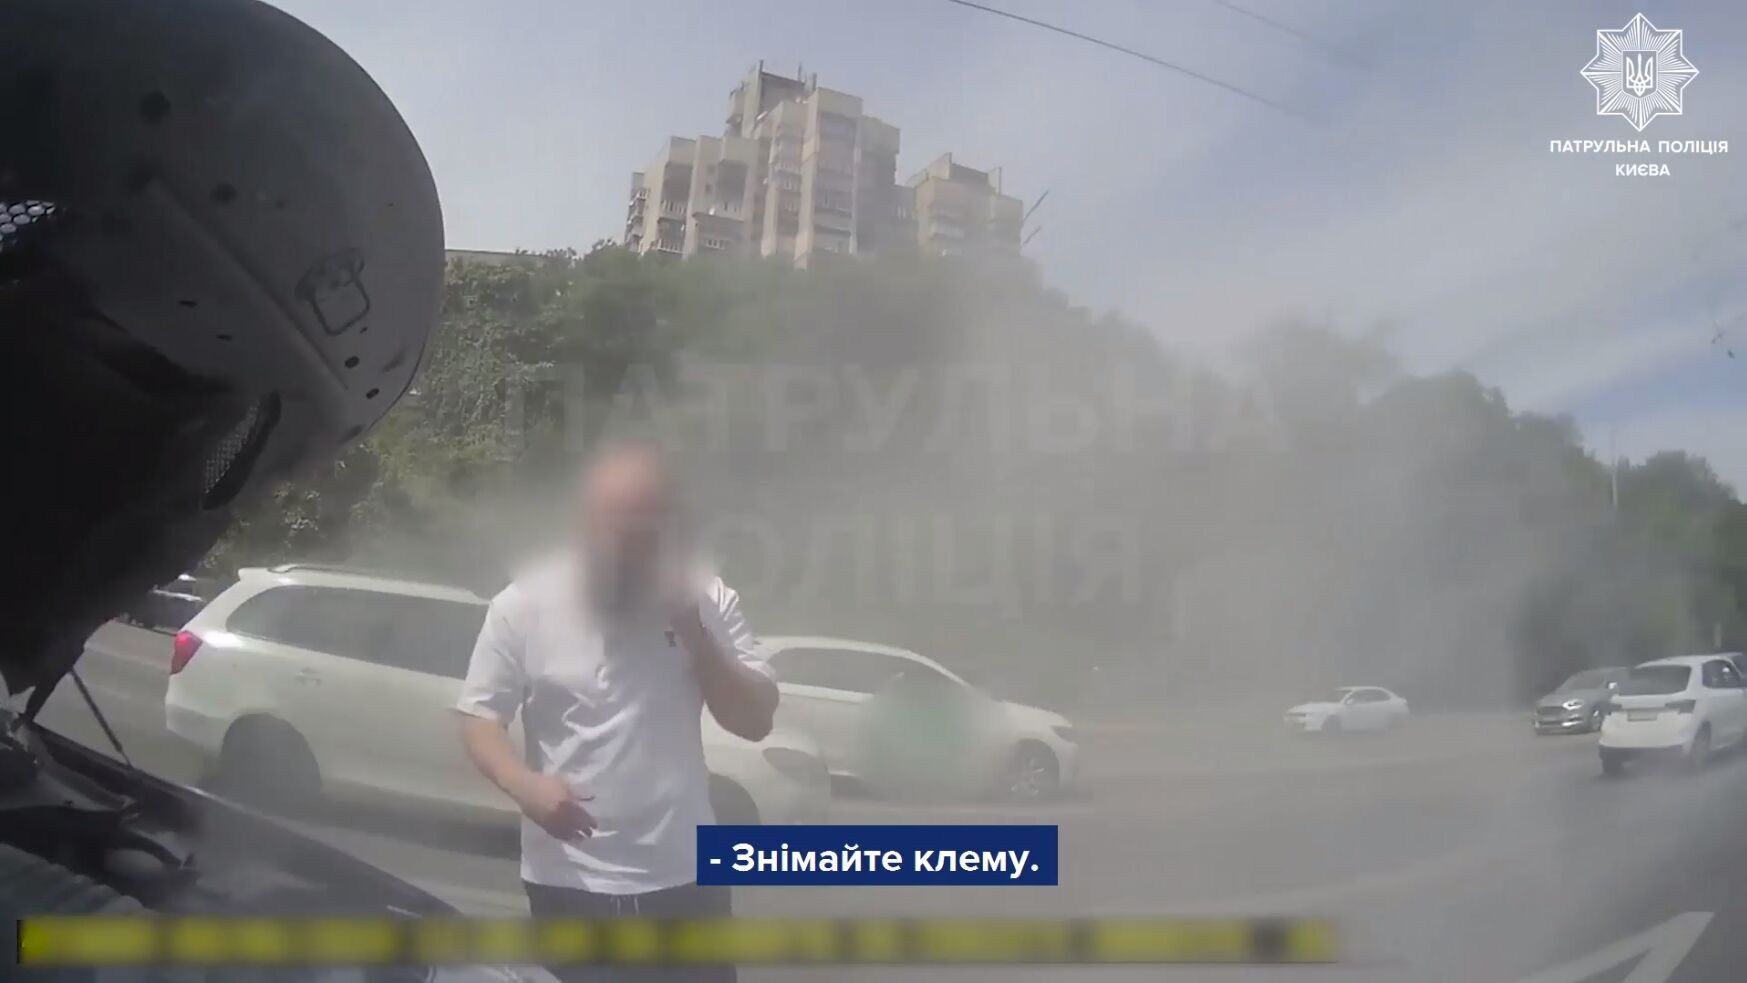 Потушили совместными усилиями: в Киеве на Печерске во время движения загорелась легковушка. Видео